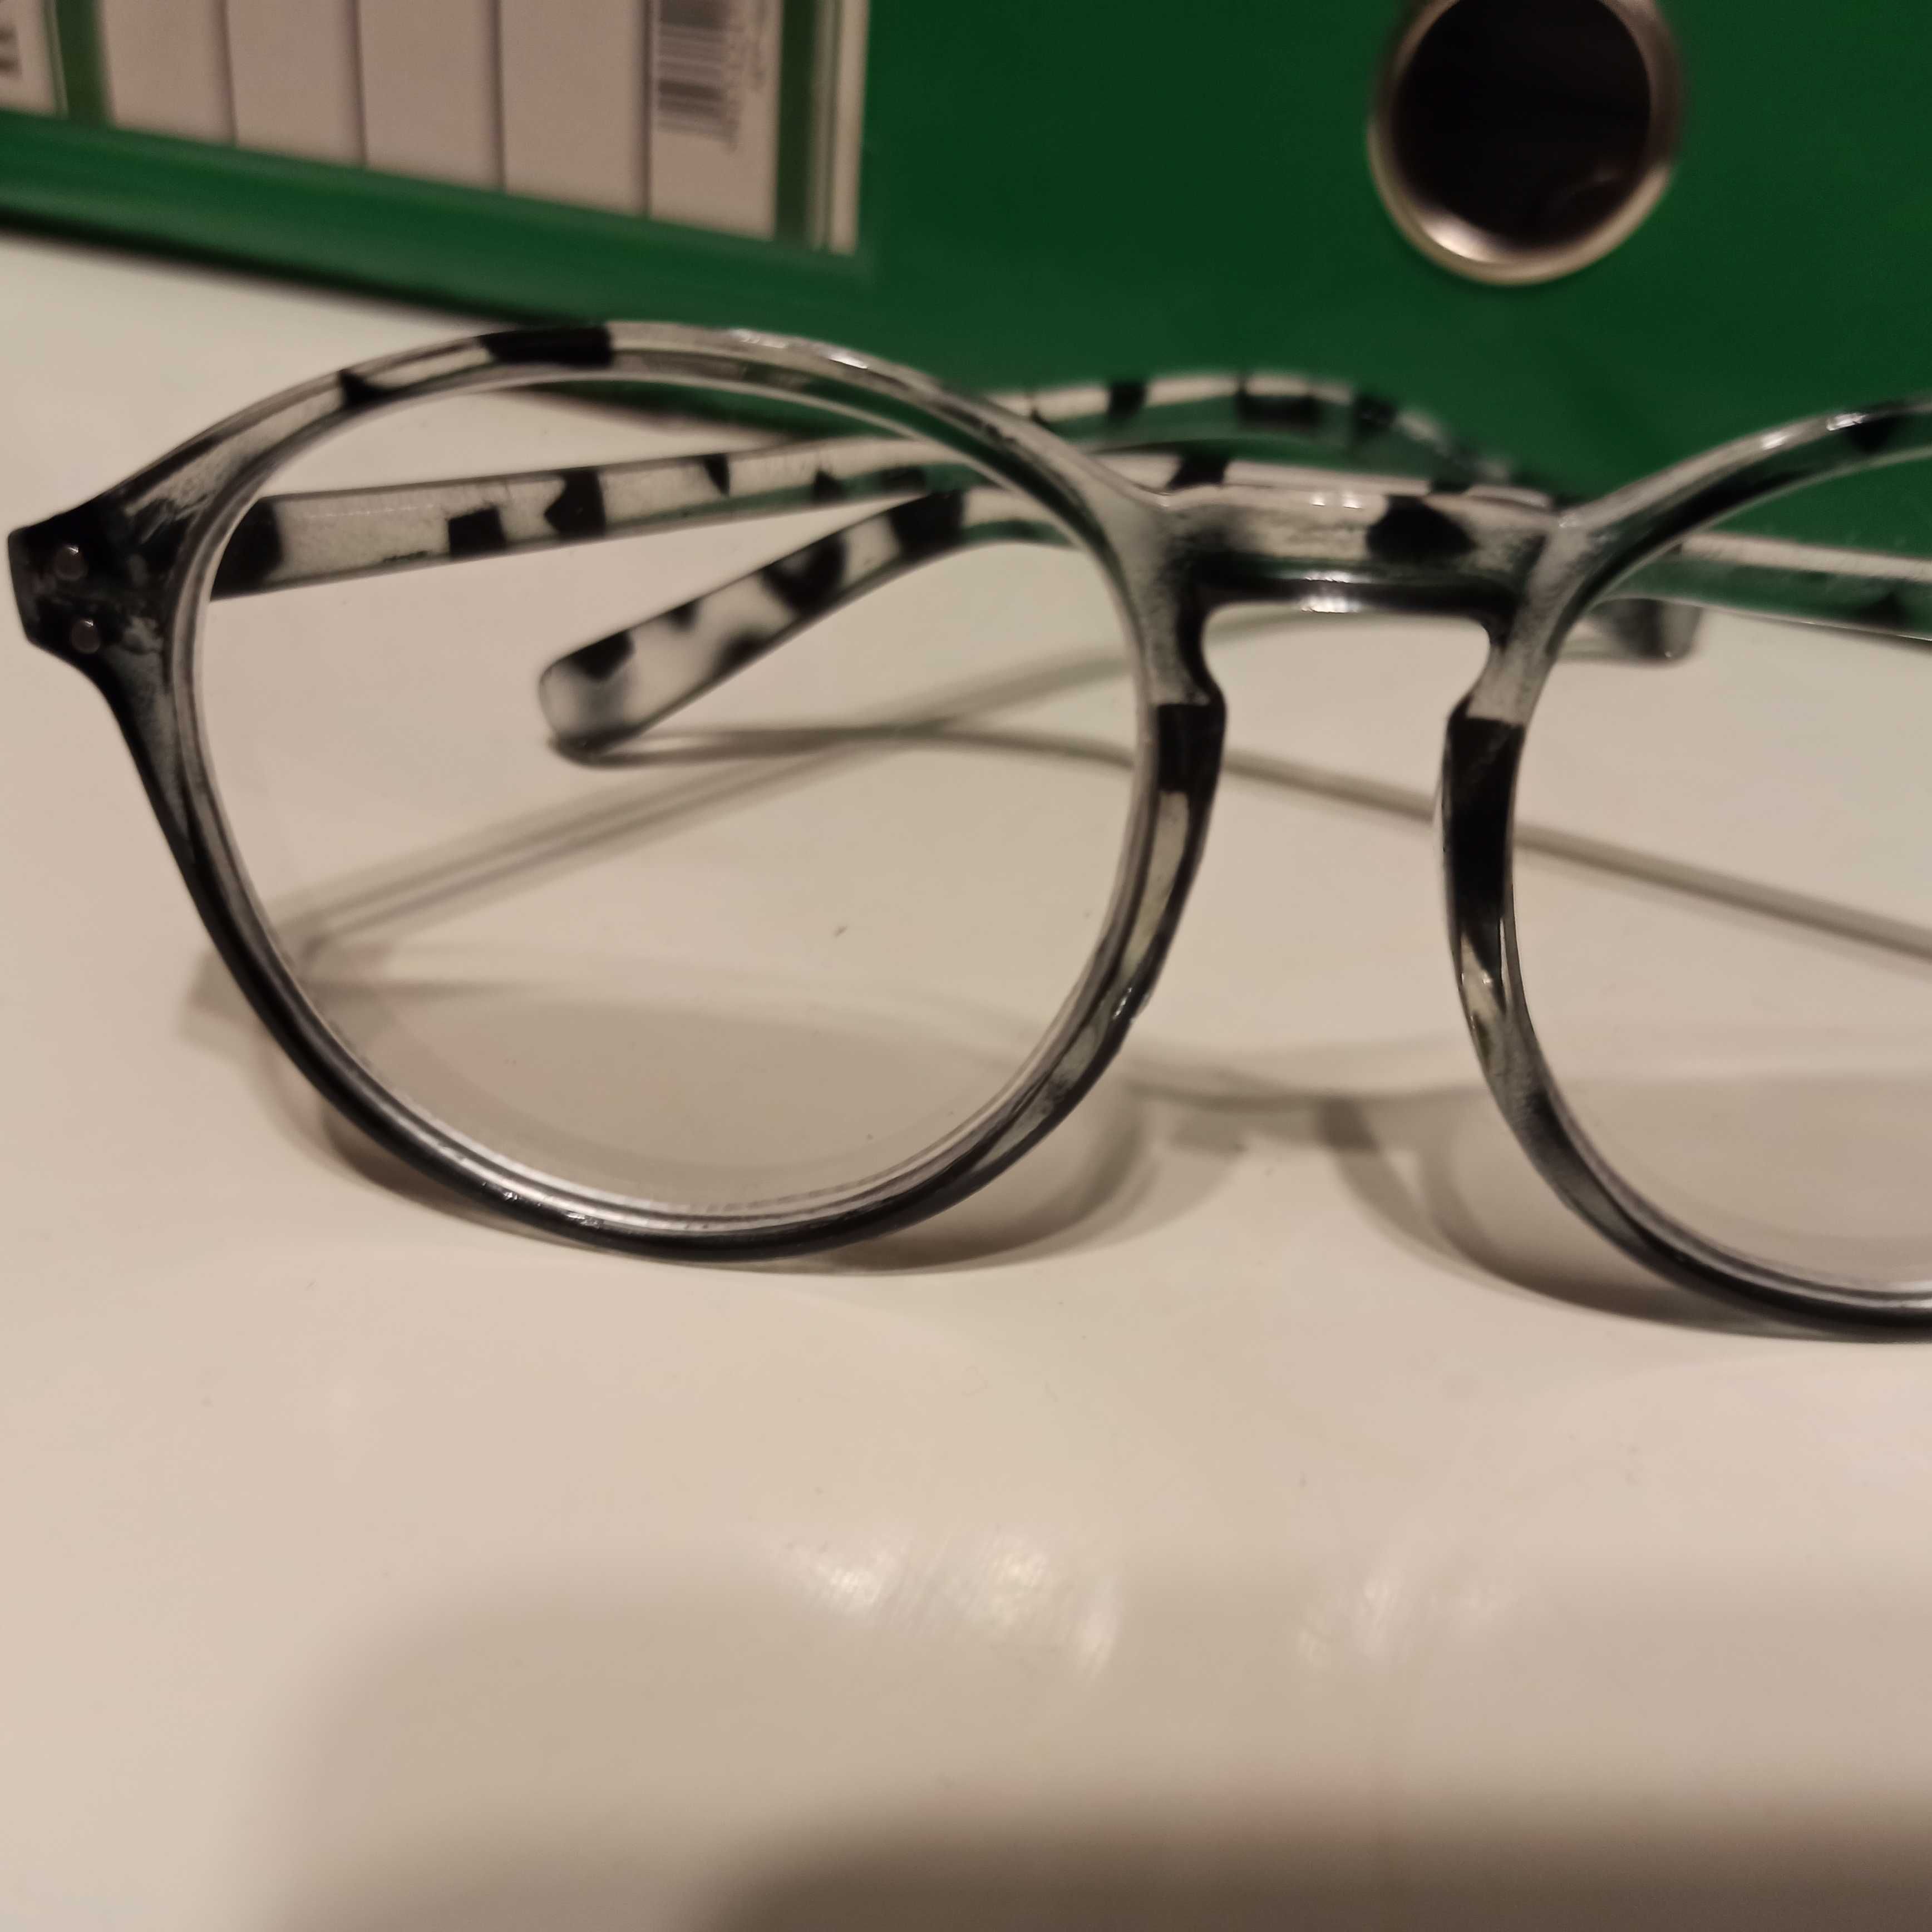 Panterkowe czarne okulary szkła minusy oprawki -1,5